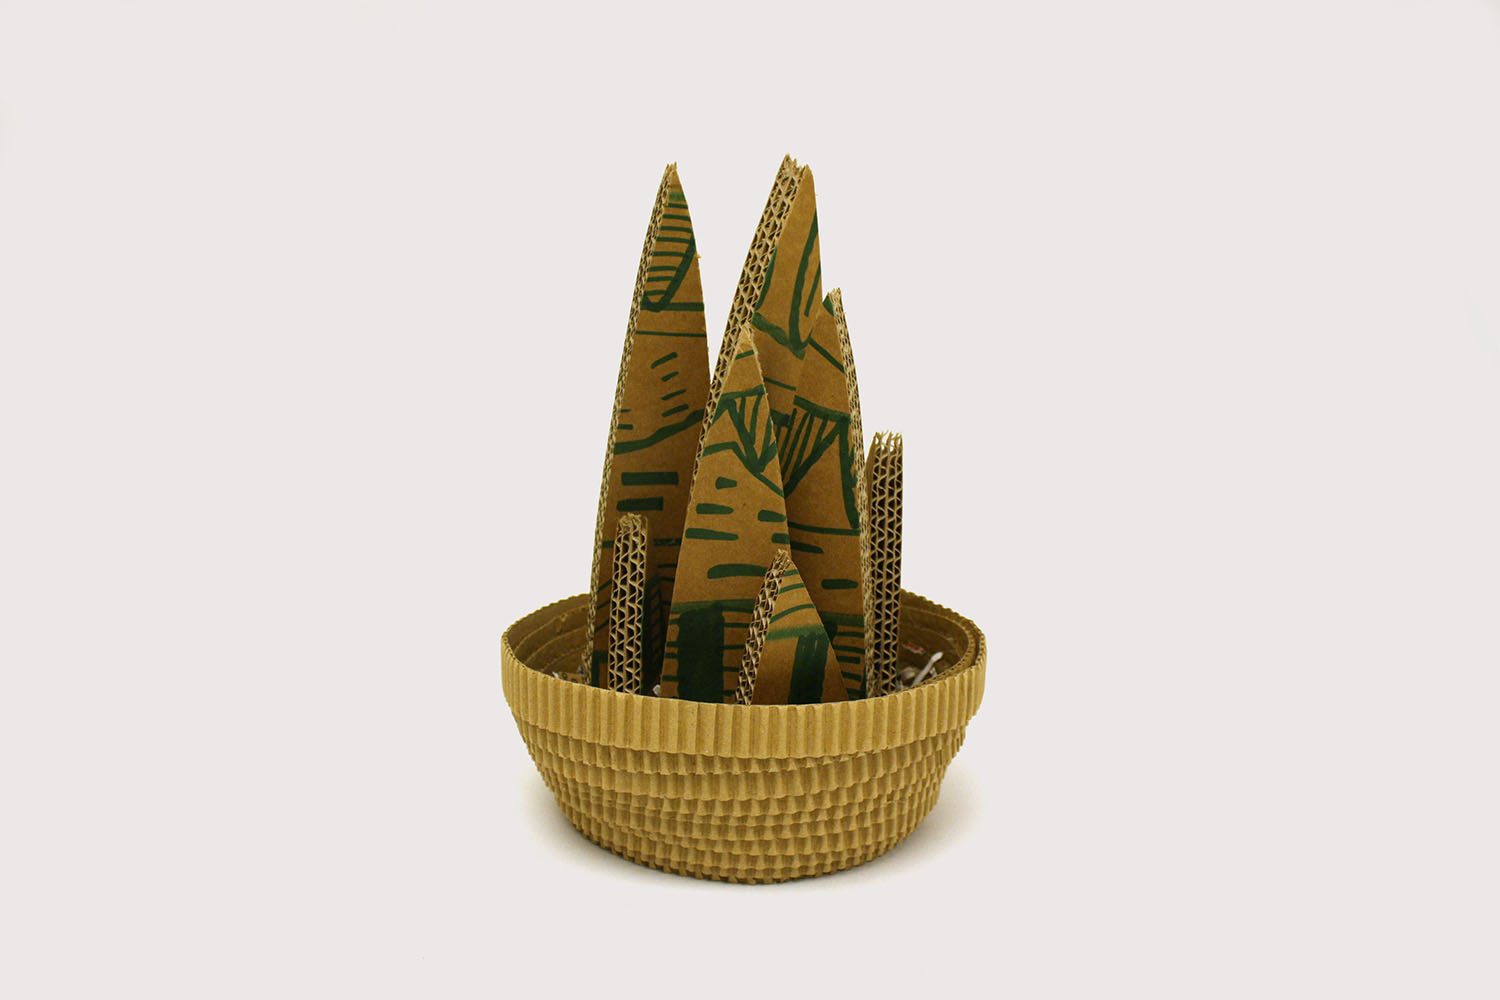 Kartoizko kaktusak